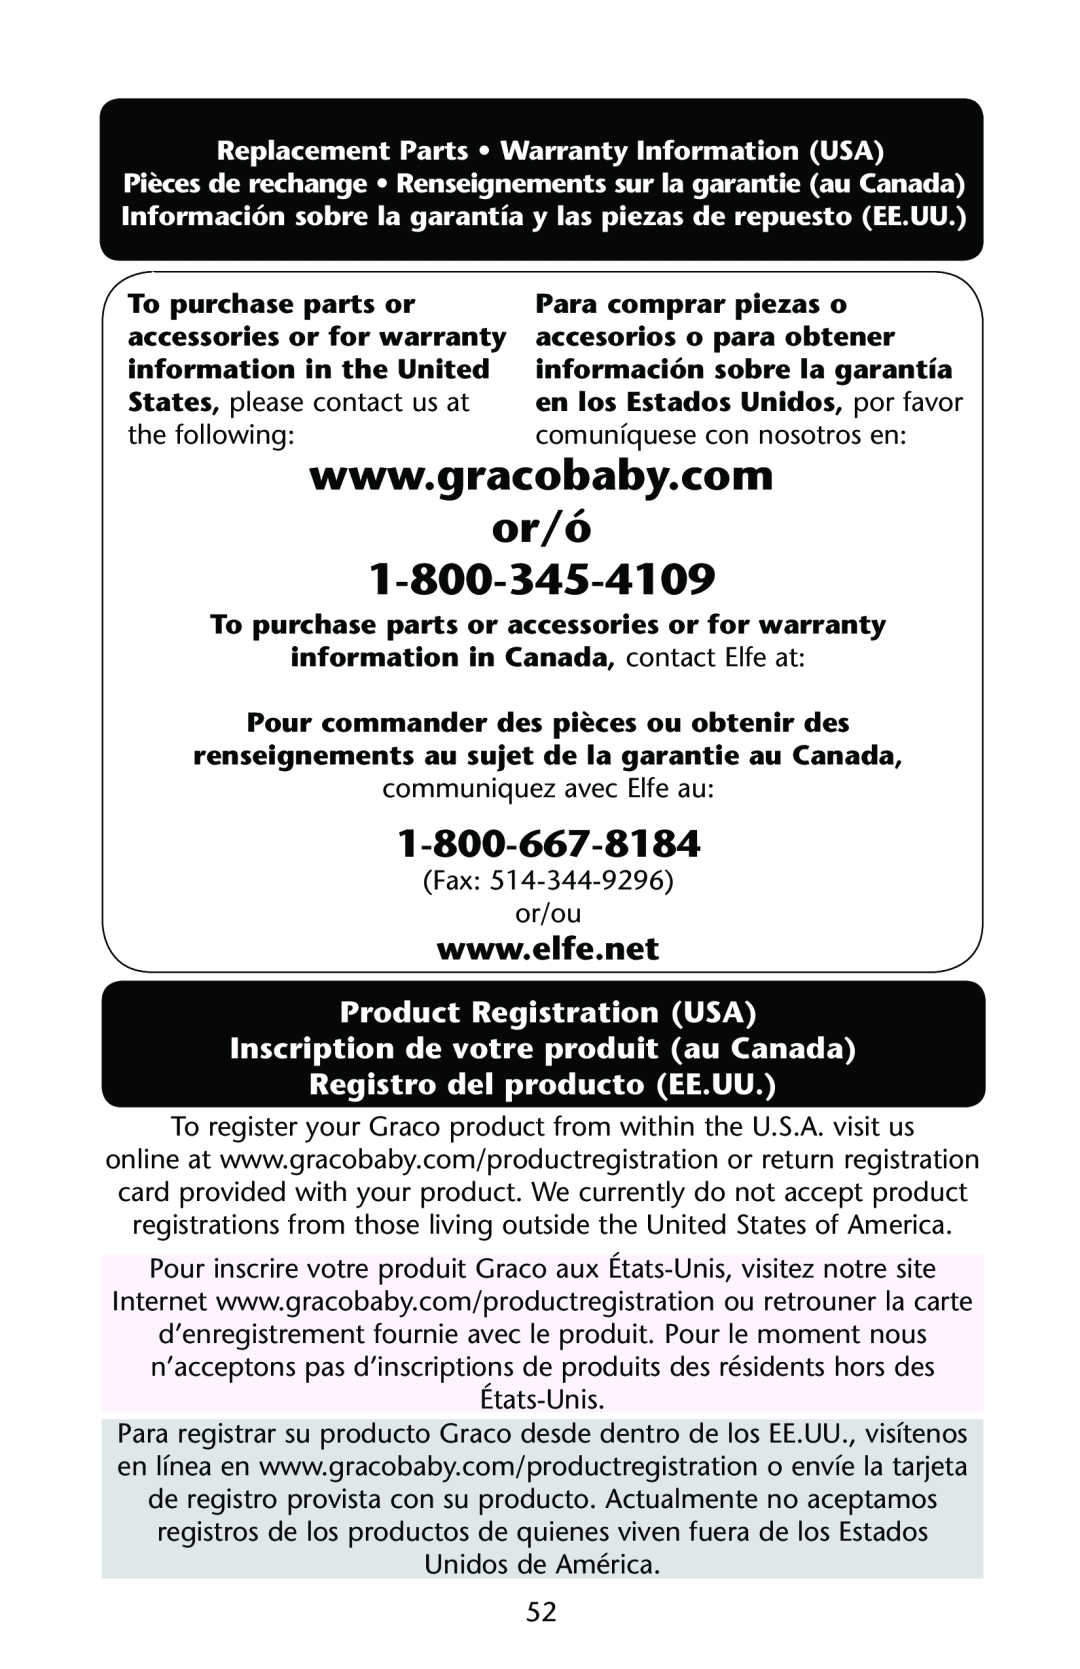 Graco PD162168A or/ó, Product Registration USA Inscription de votre produit au Canada, Registro del producto EE.UU 